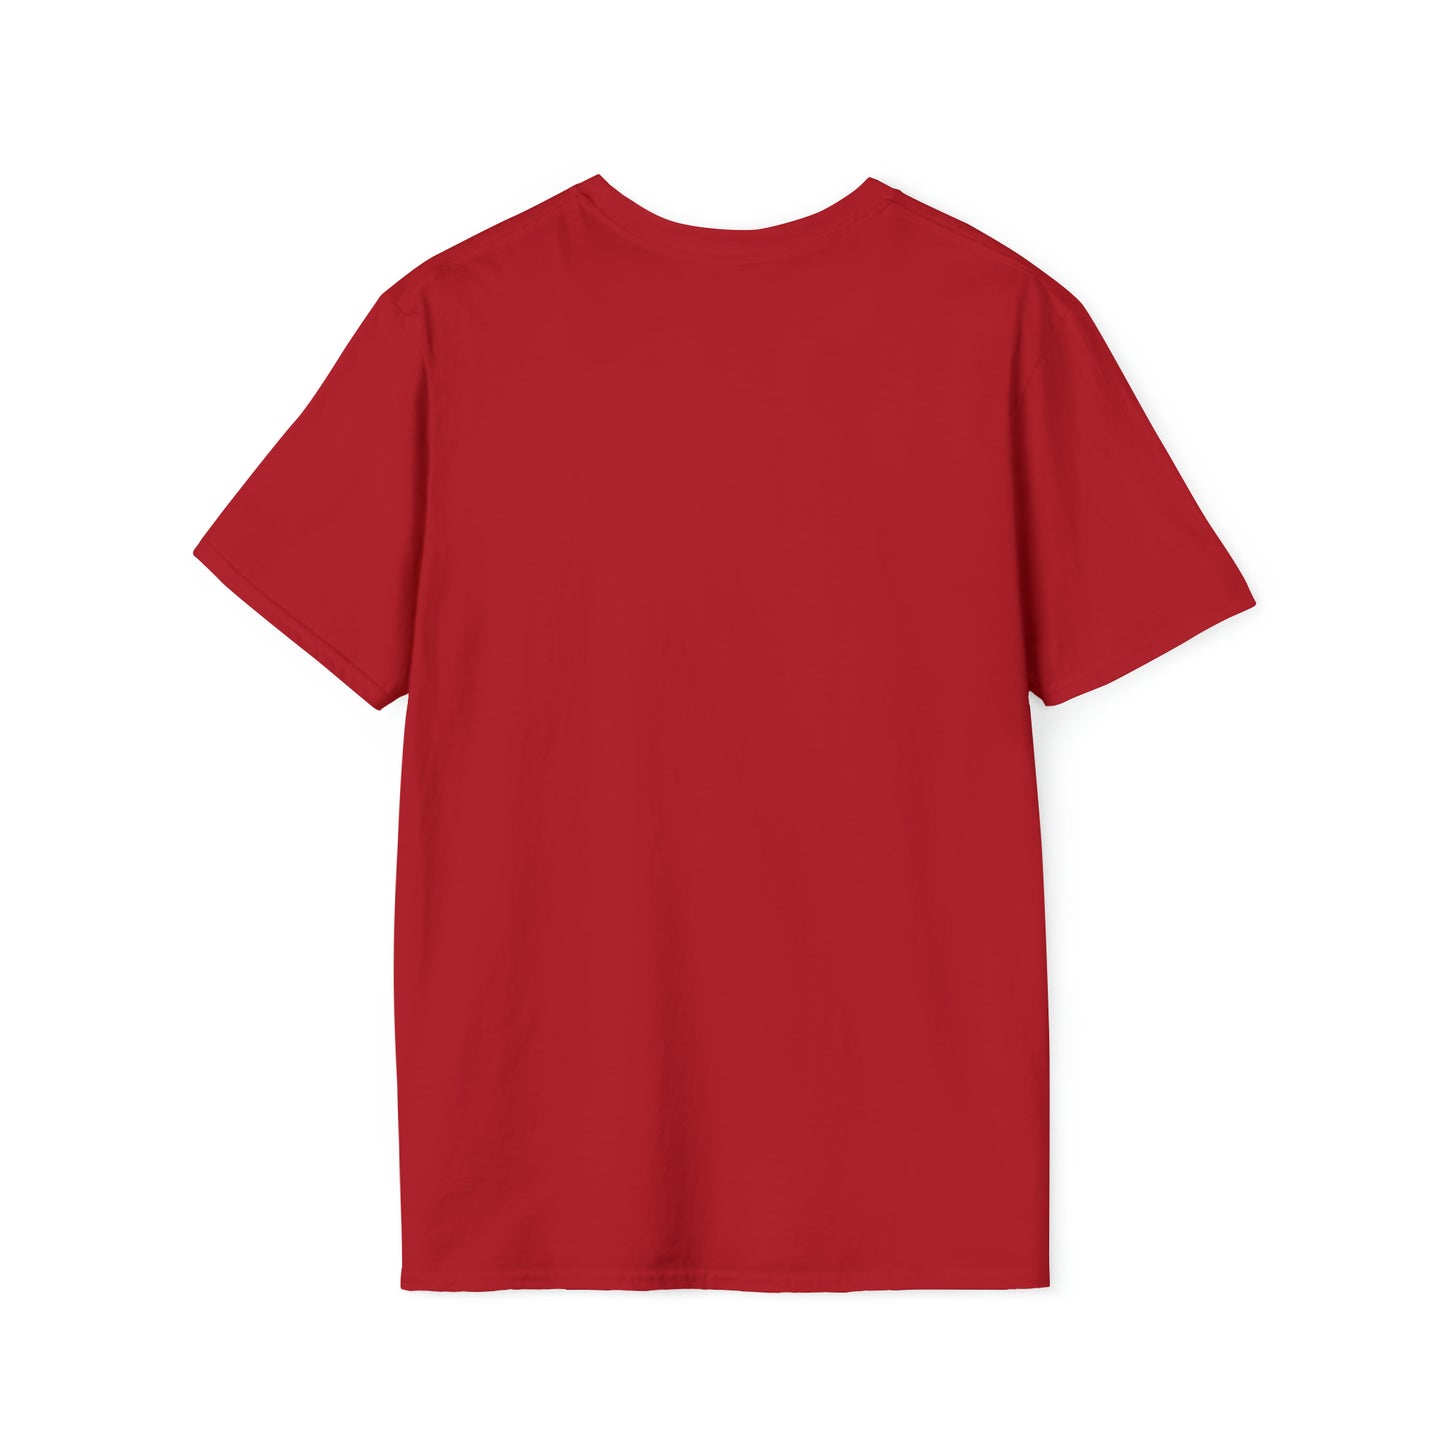 Beardracula T-Shirt